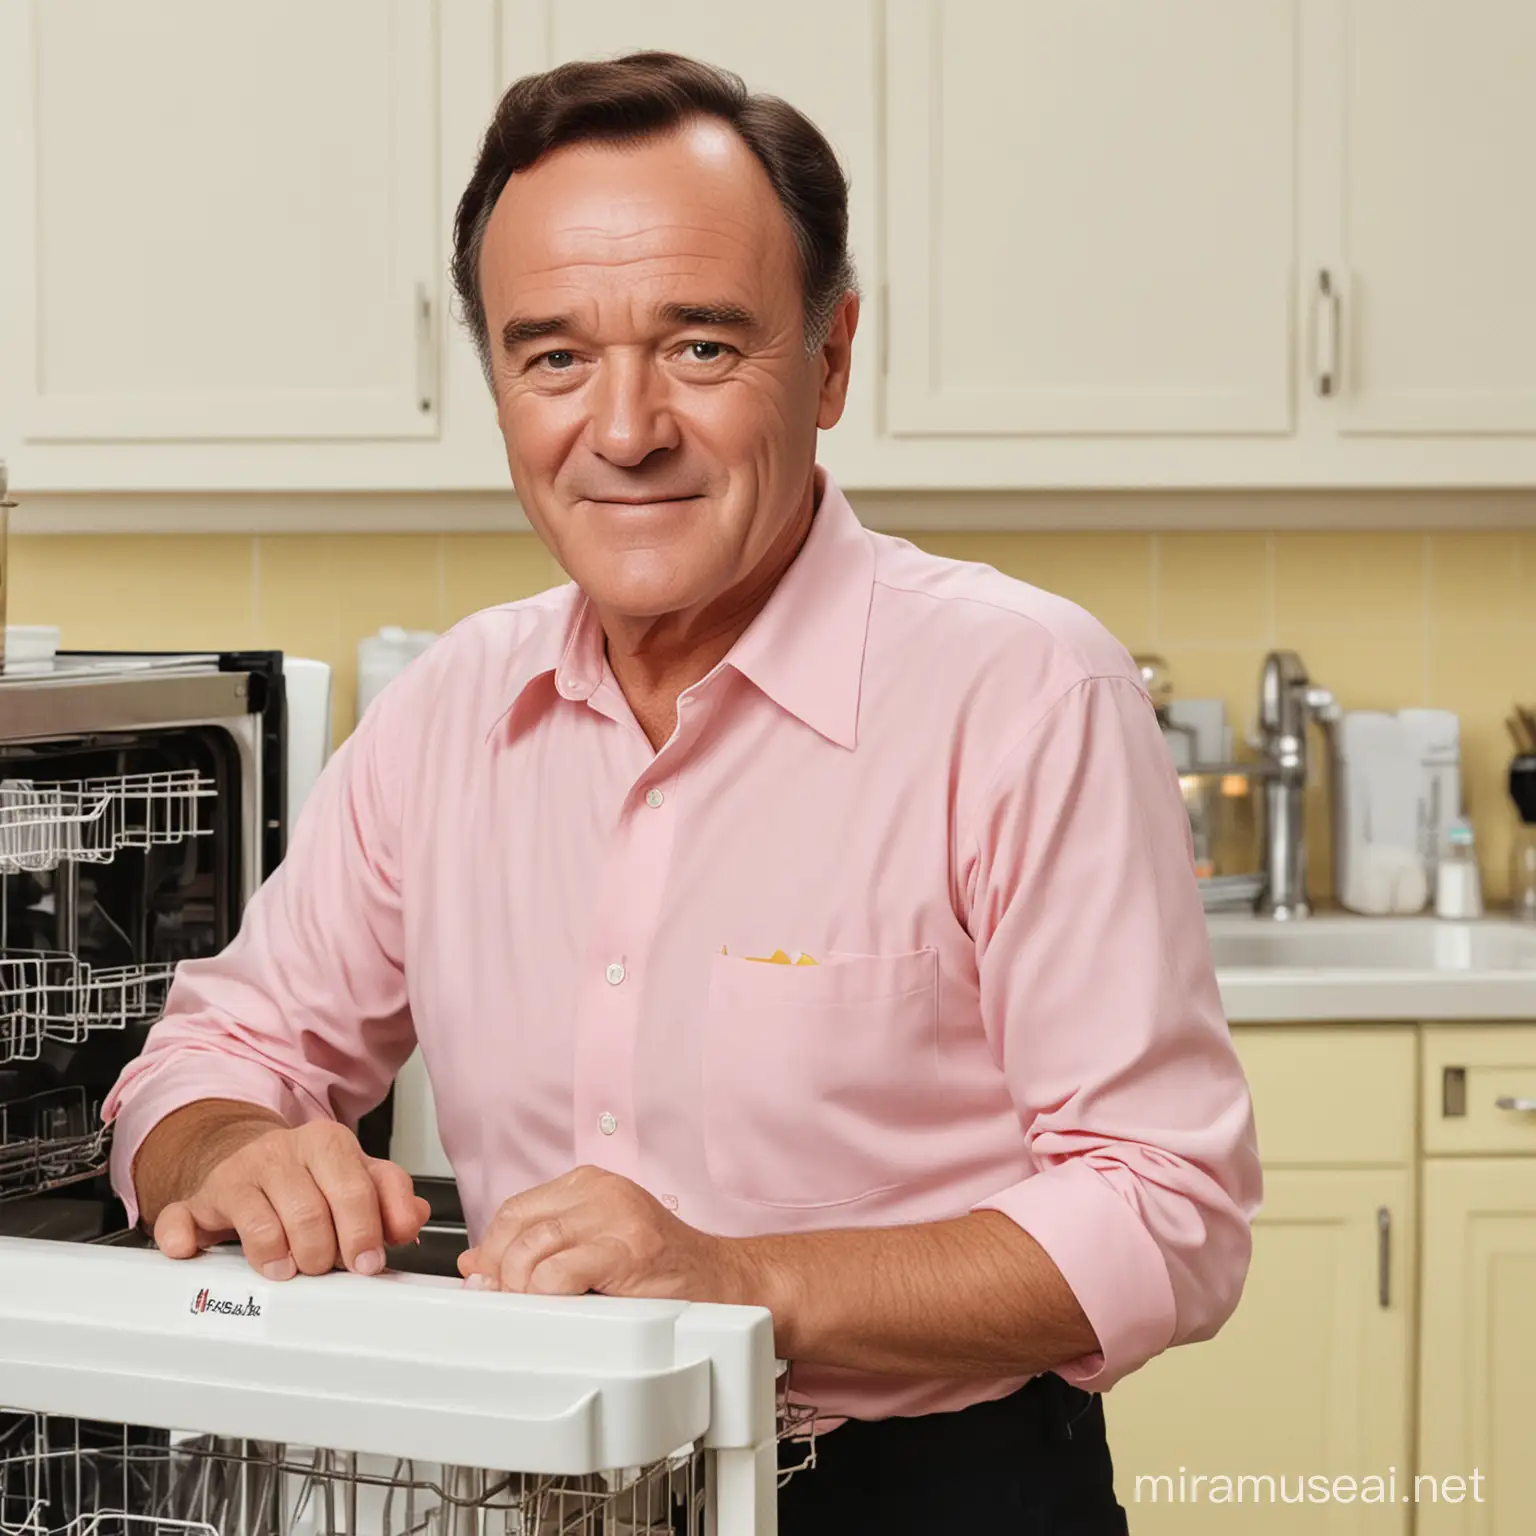 faça uma imagem de Jack Lemmon jovem com uma smart dishwasher nas cores rosa claro, amarelo claro e branco